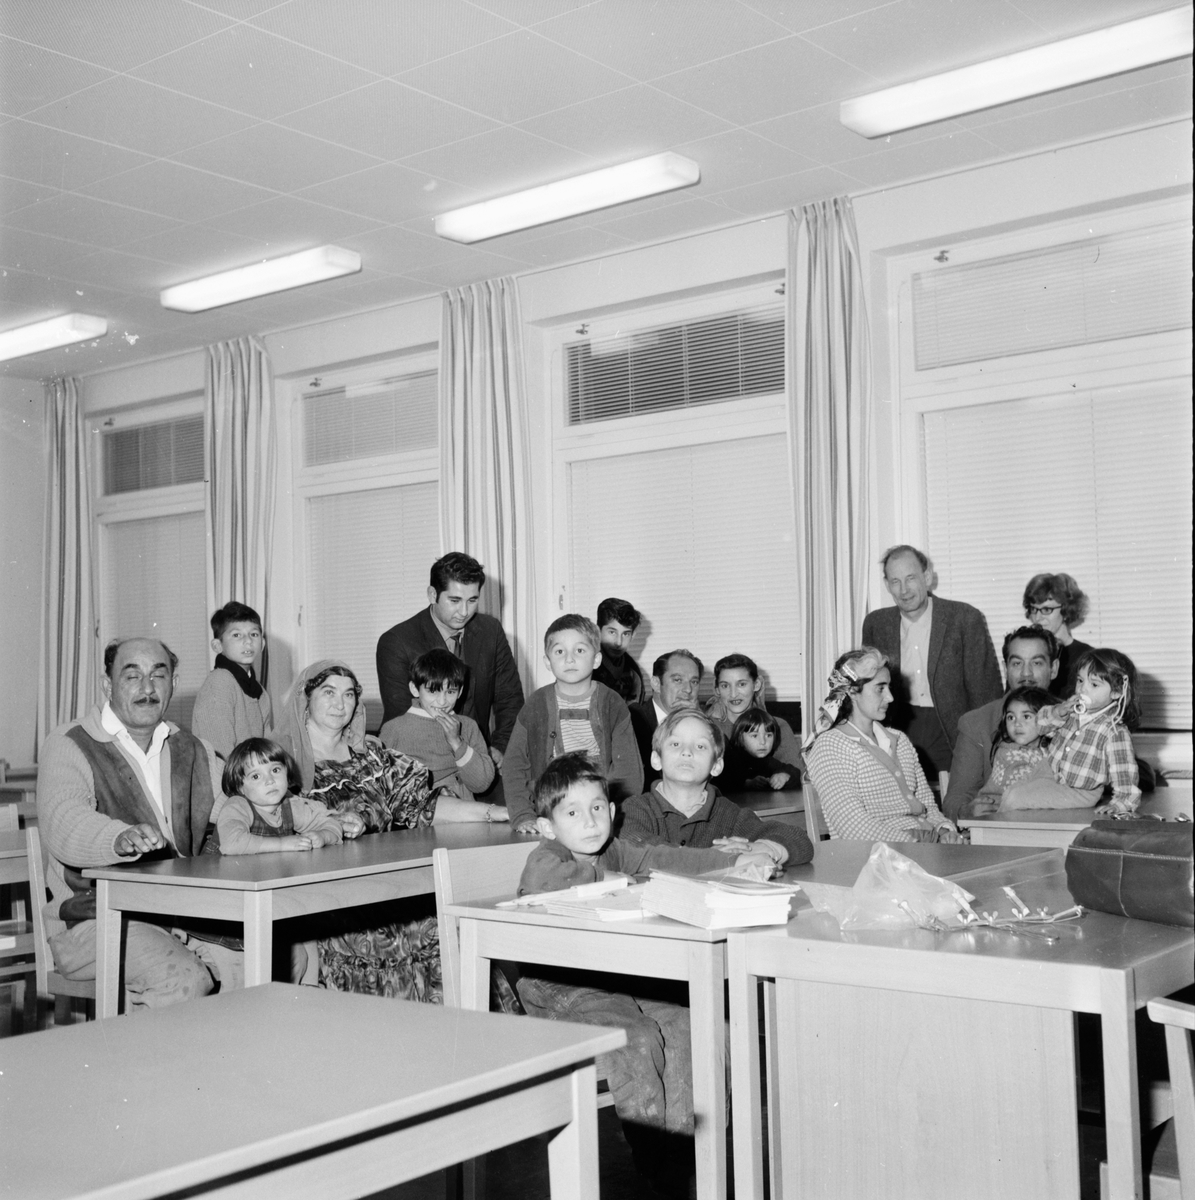 Zigenarna i Bollnäs.
15/9-1964